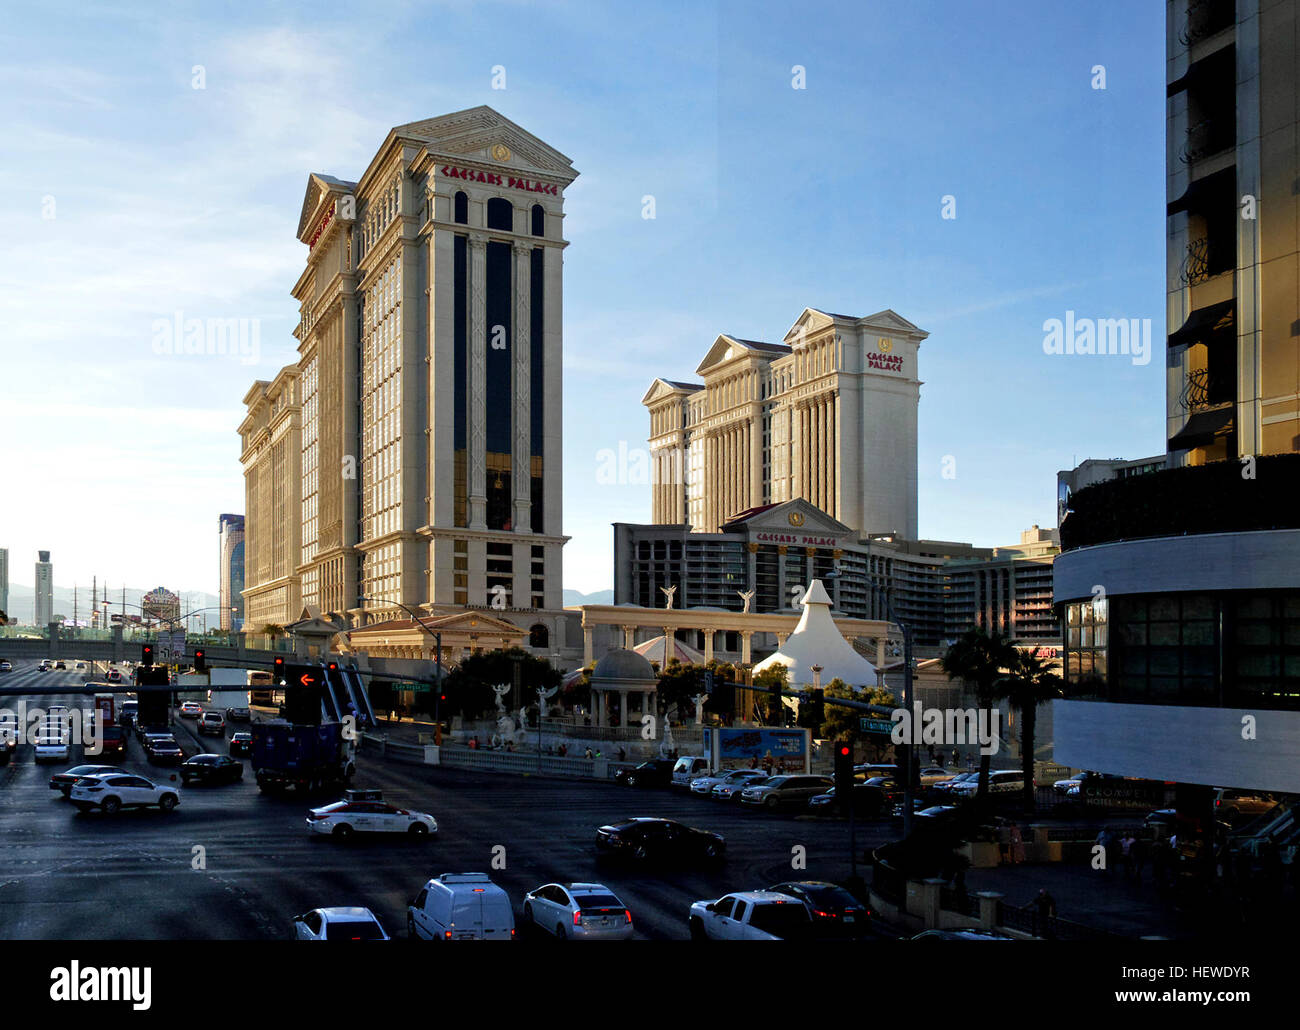 Caesars Palace ist ein AAA Four Diamond-Luxus-Hotel und Casino in Paradies, Nevada, USA, befinden sich auf der Westseite des Las Vegas Strip, zwischen Bellagio und The Mirage. Es ist eines der angesehensten Casino-Hotels der Welt und einer der größten und bekanntesten Sehenswürdigkeiten Las Vegas Stockfoto